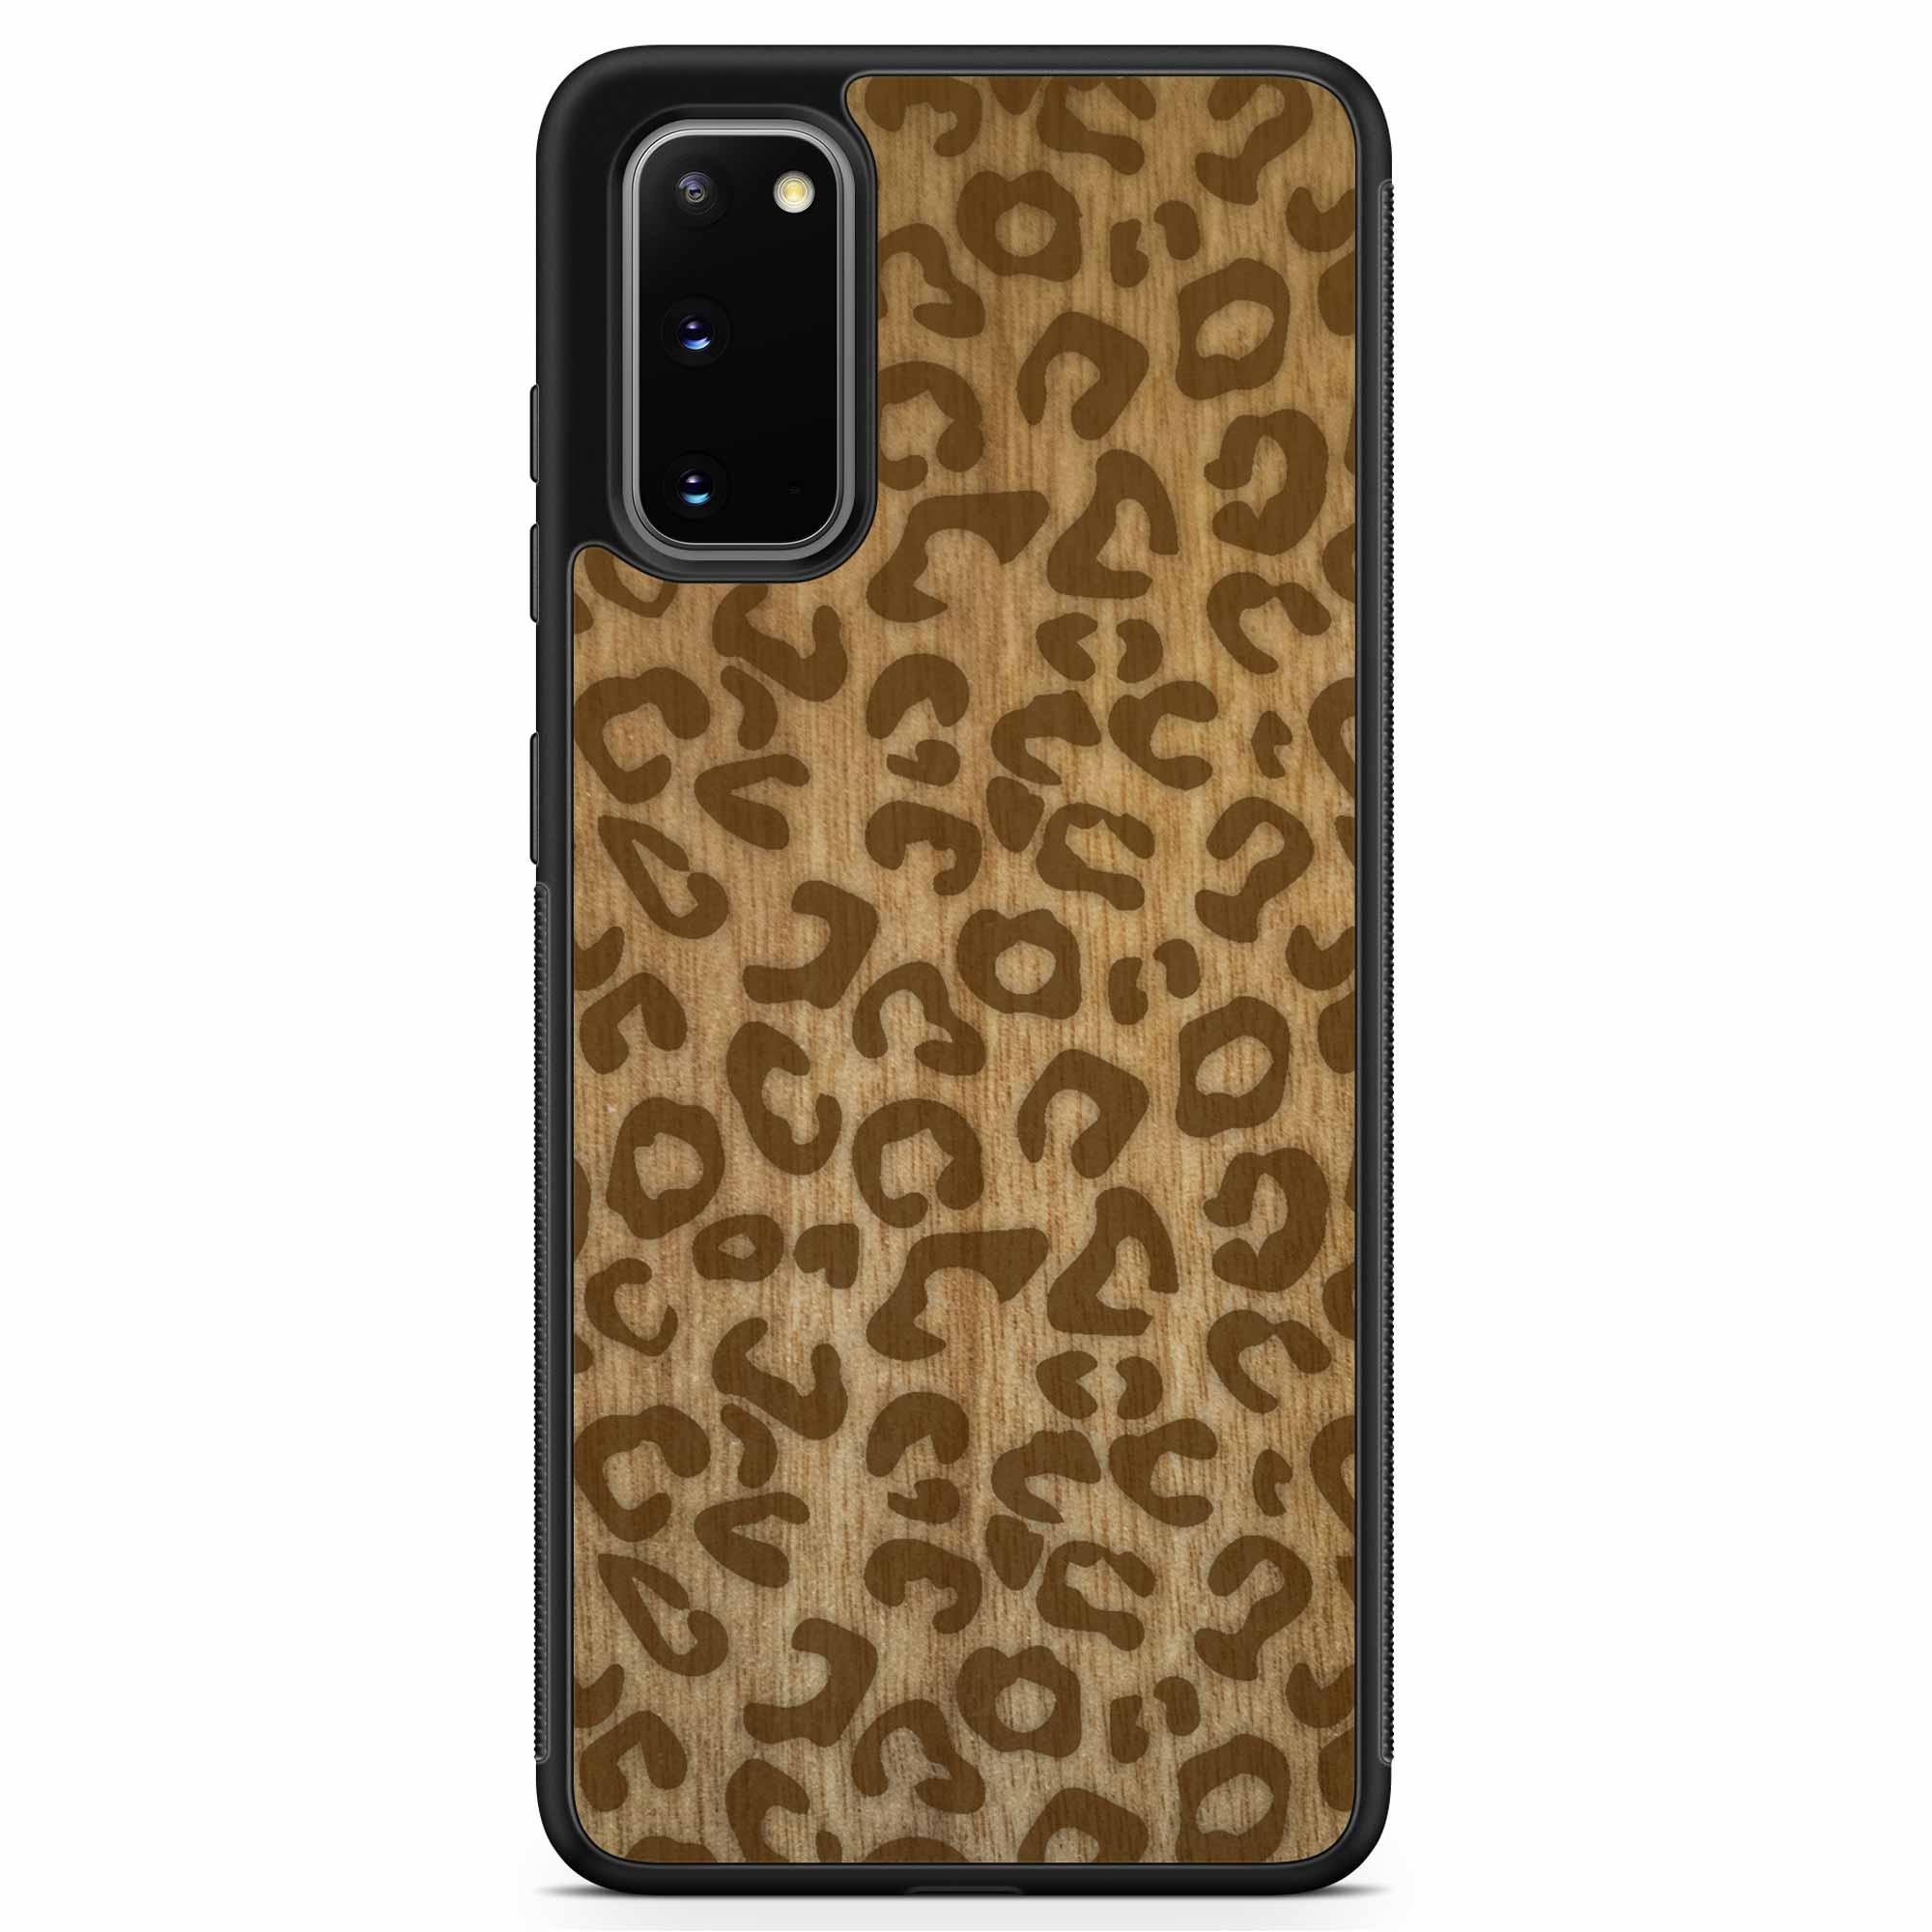 Funda de madera para teléfono Samsung S20 con estampado de guepardo